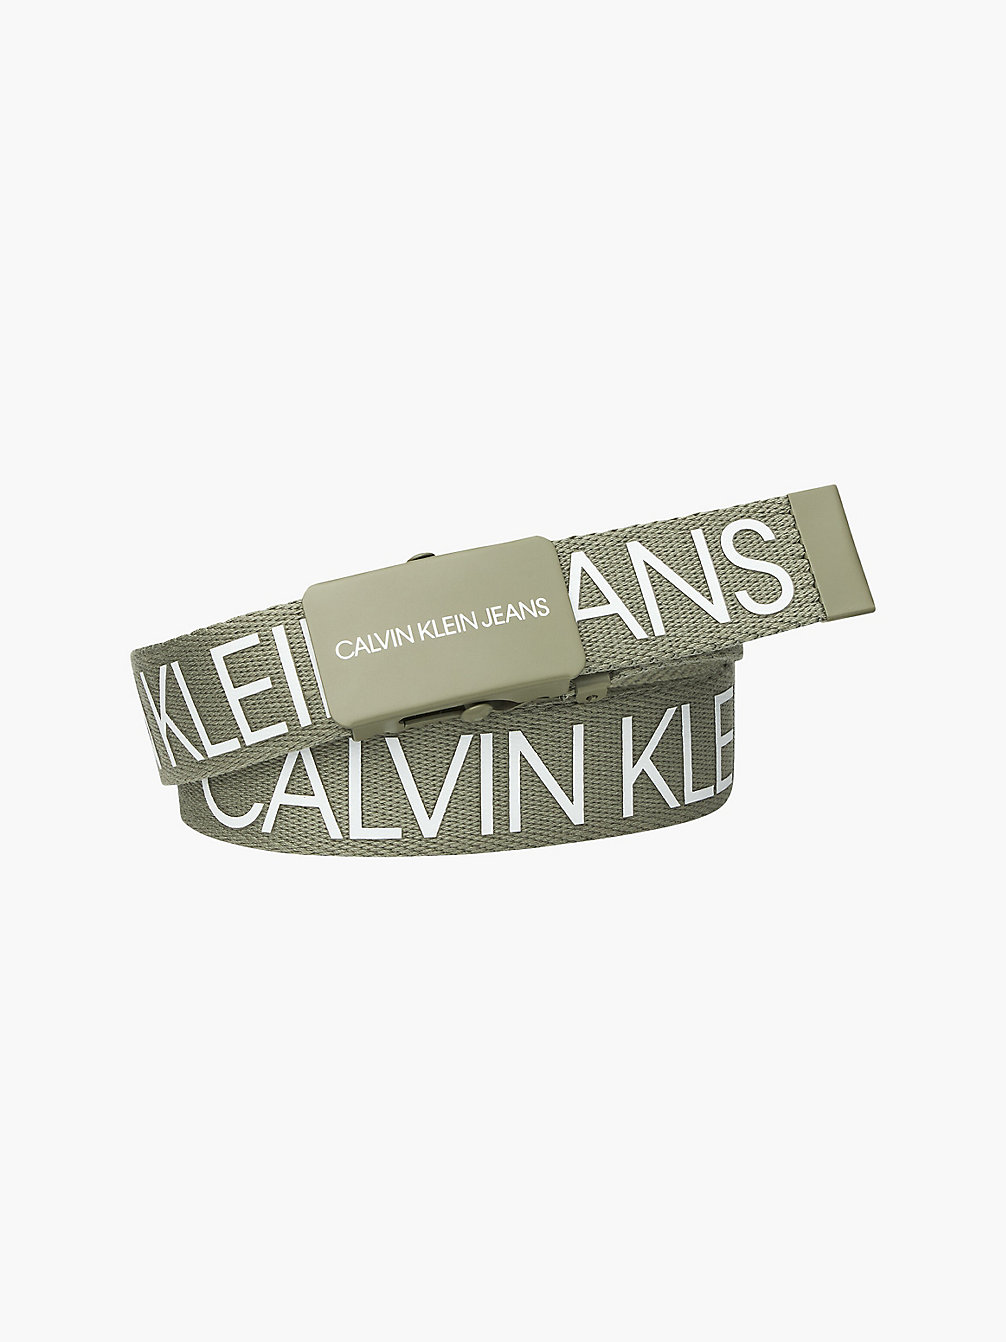 FOREST KHAKI Unisex Logo Belt undefined girls Calvin Klein